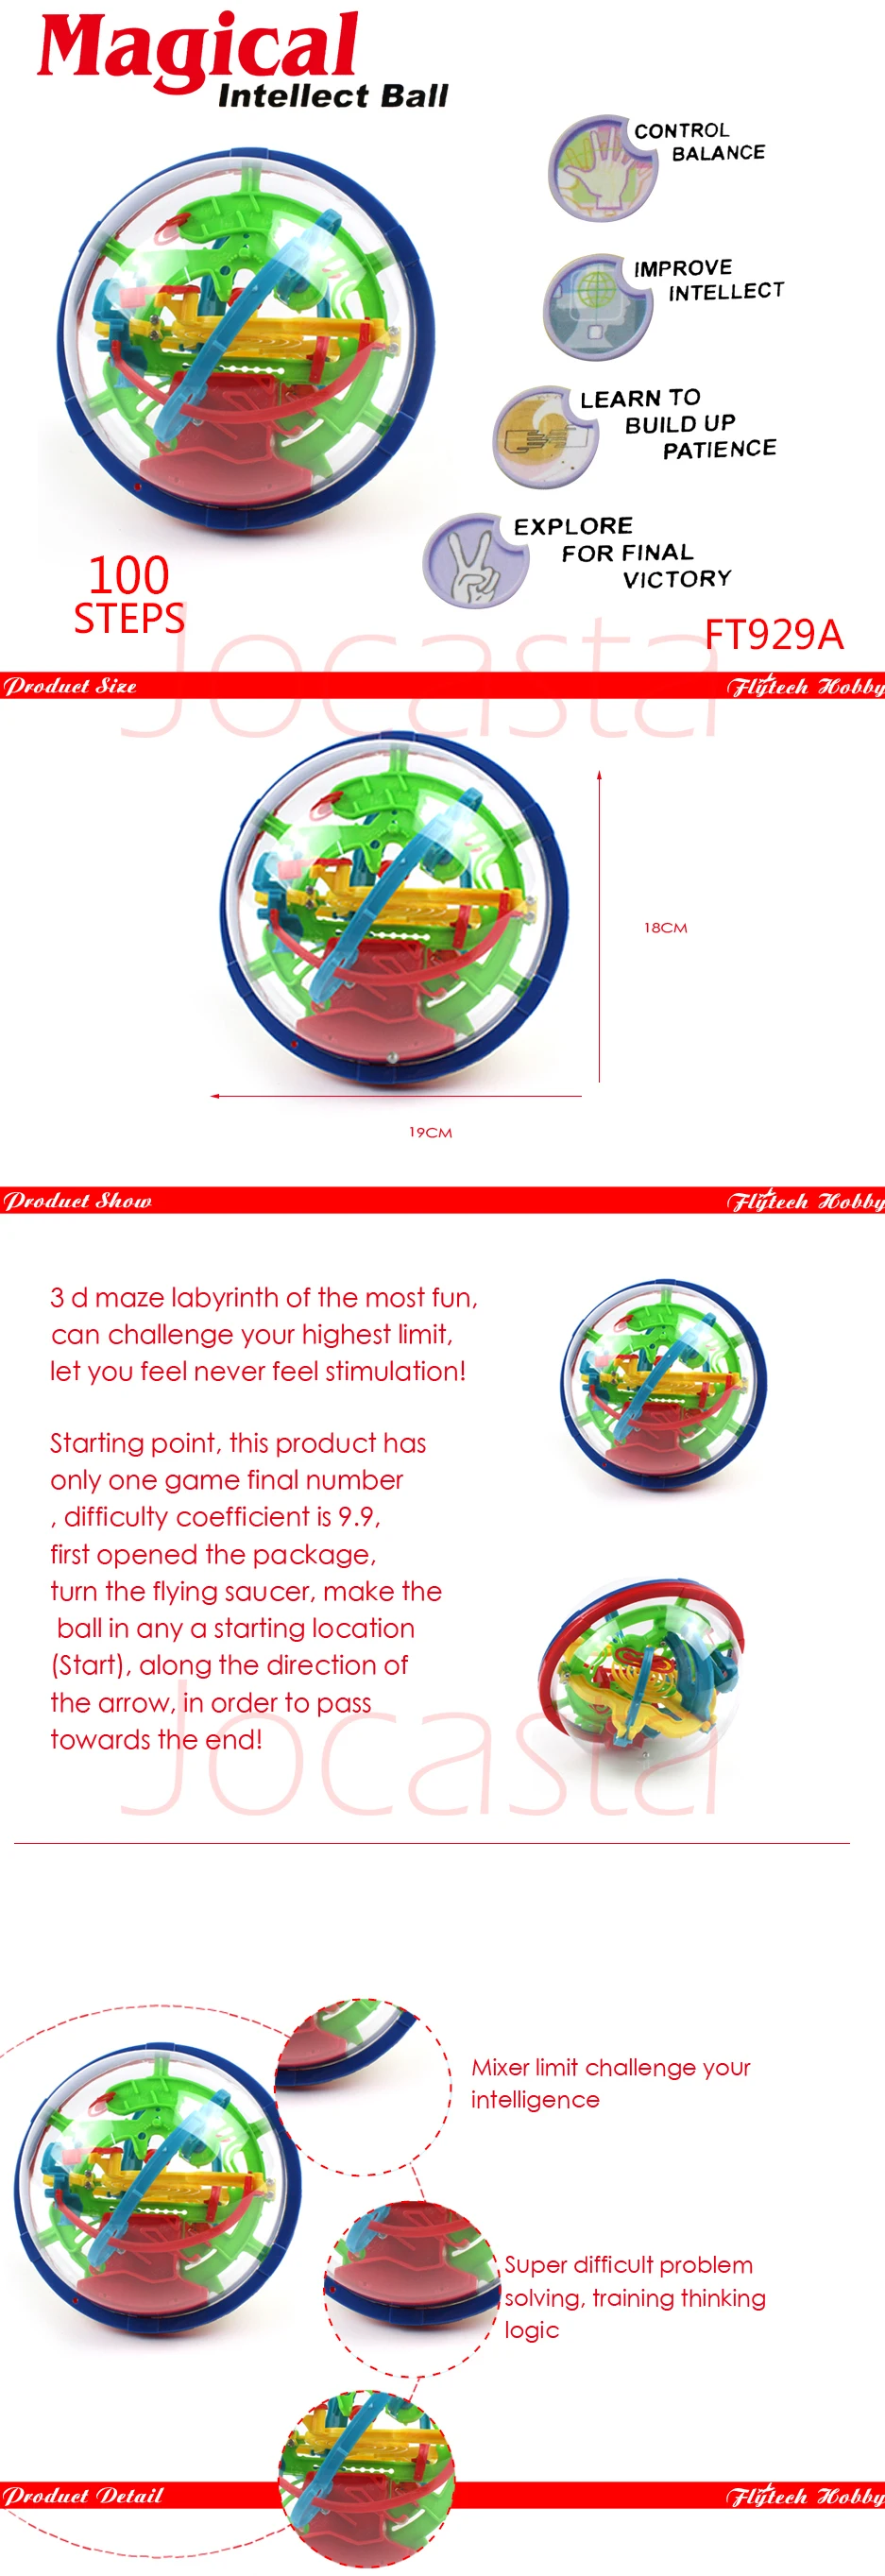 3D волшебный лабиринт мяч головоломка игра игрушки Роллинг IQ развивающая игрушка мяч 100 шагов баланс мозговой Прорезыватель Развивающие игрушки для детей